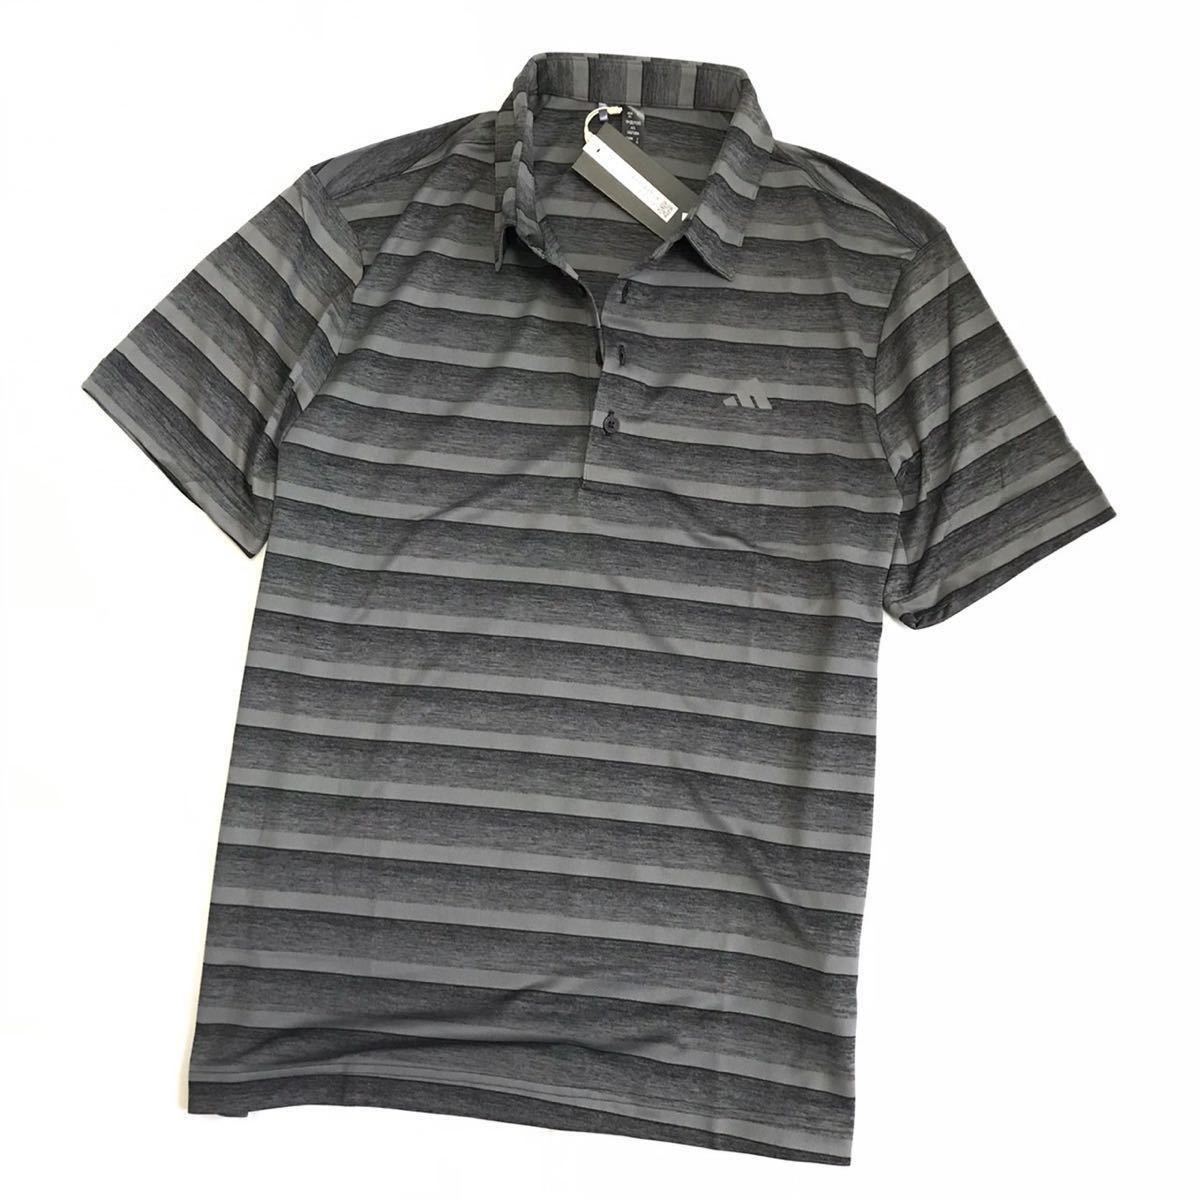 *H340 новый товар [ мужской XL(O)] черный adidas Adidas Golf одежда градация окантовка рубашка с коротким рукавом общий рисунок принт .... ткань 